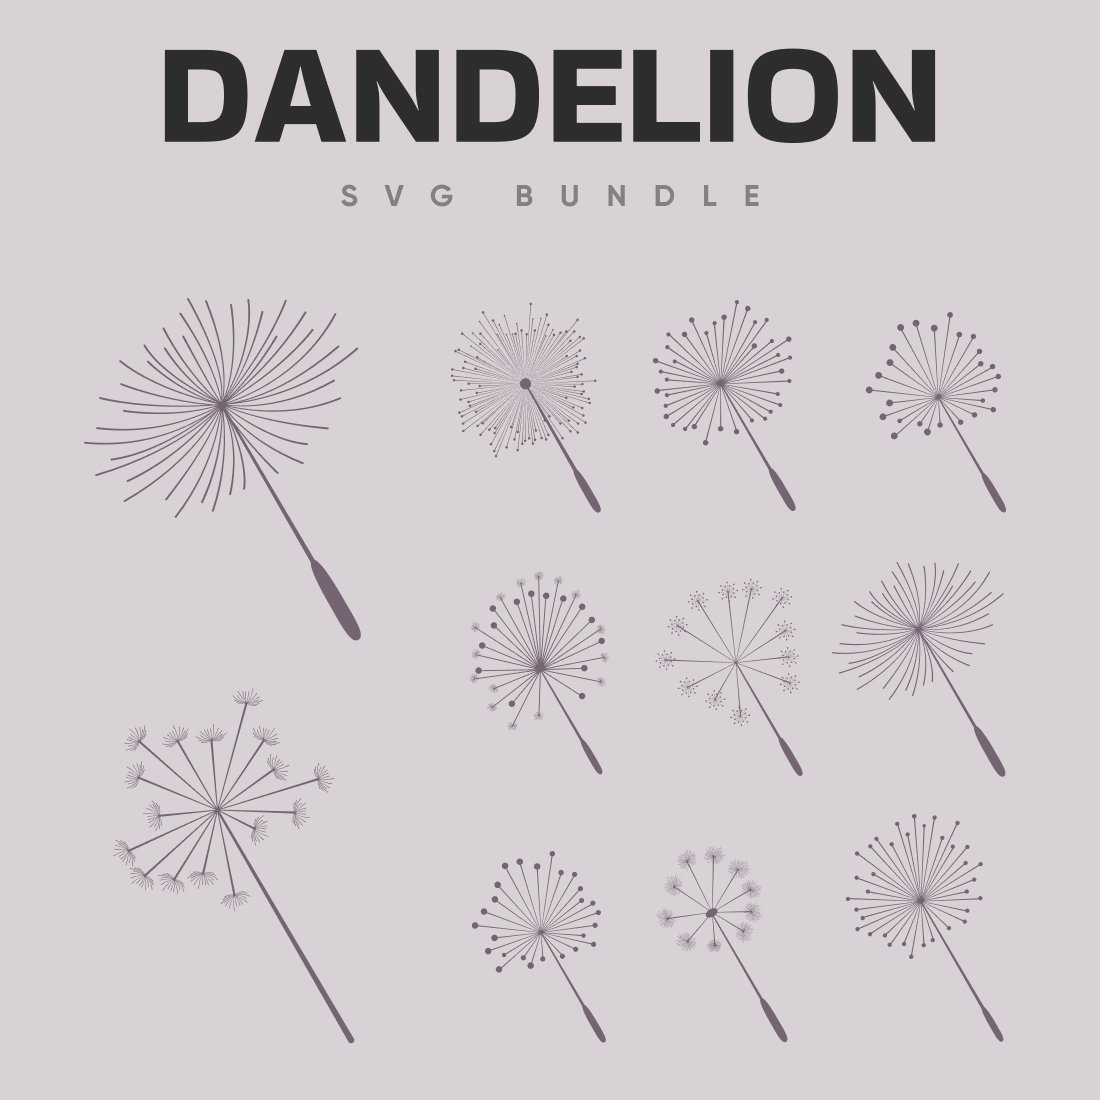 Image dandelion svg bundle.